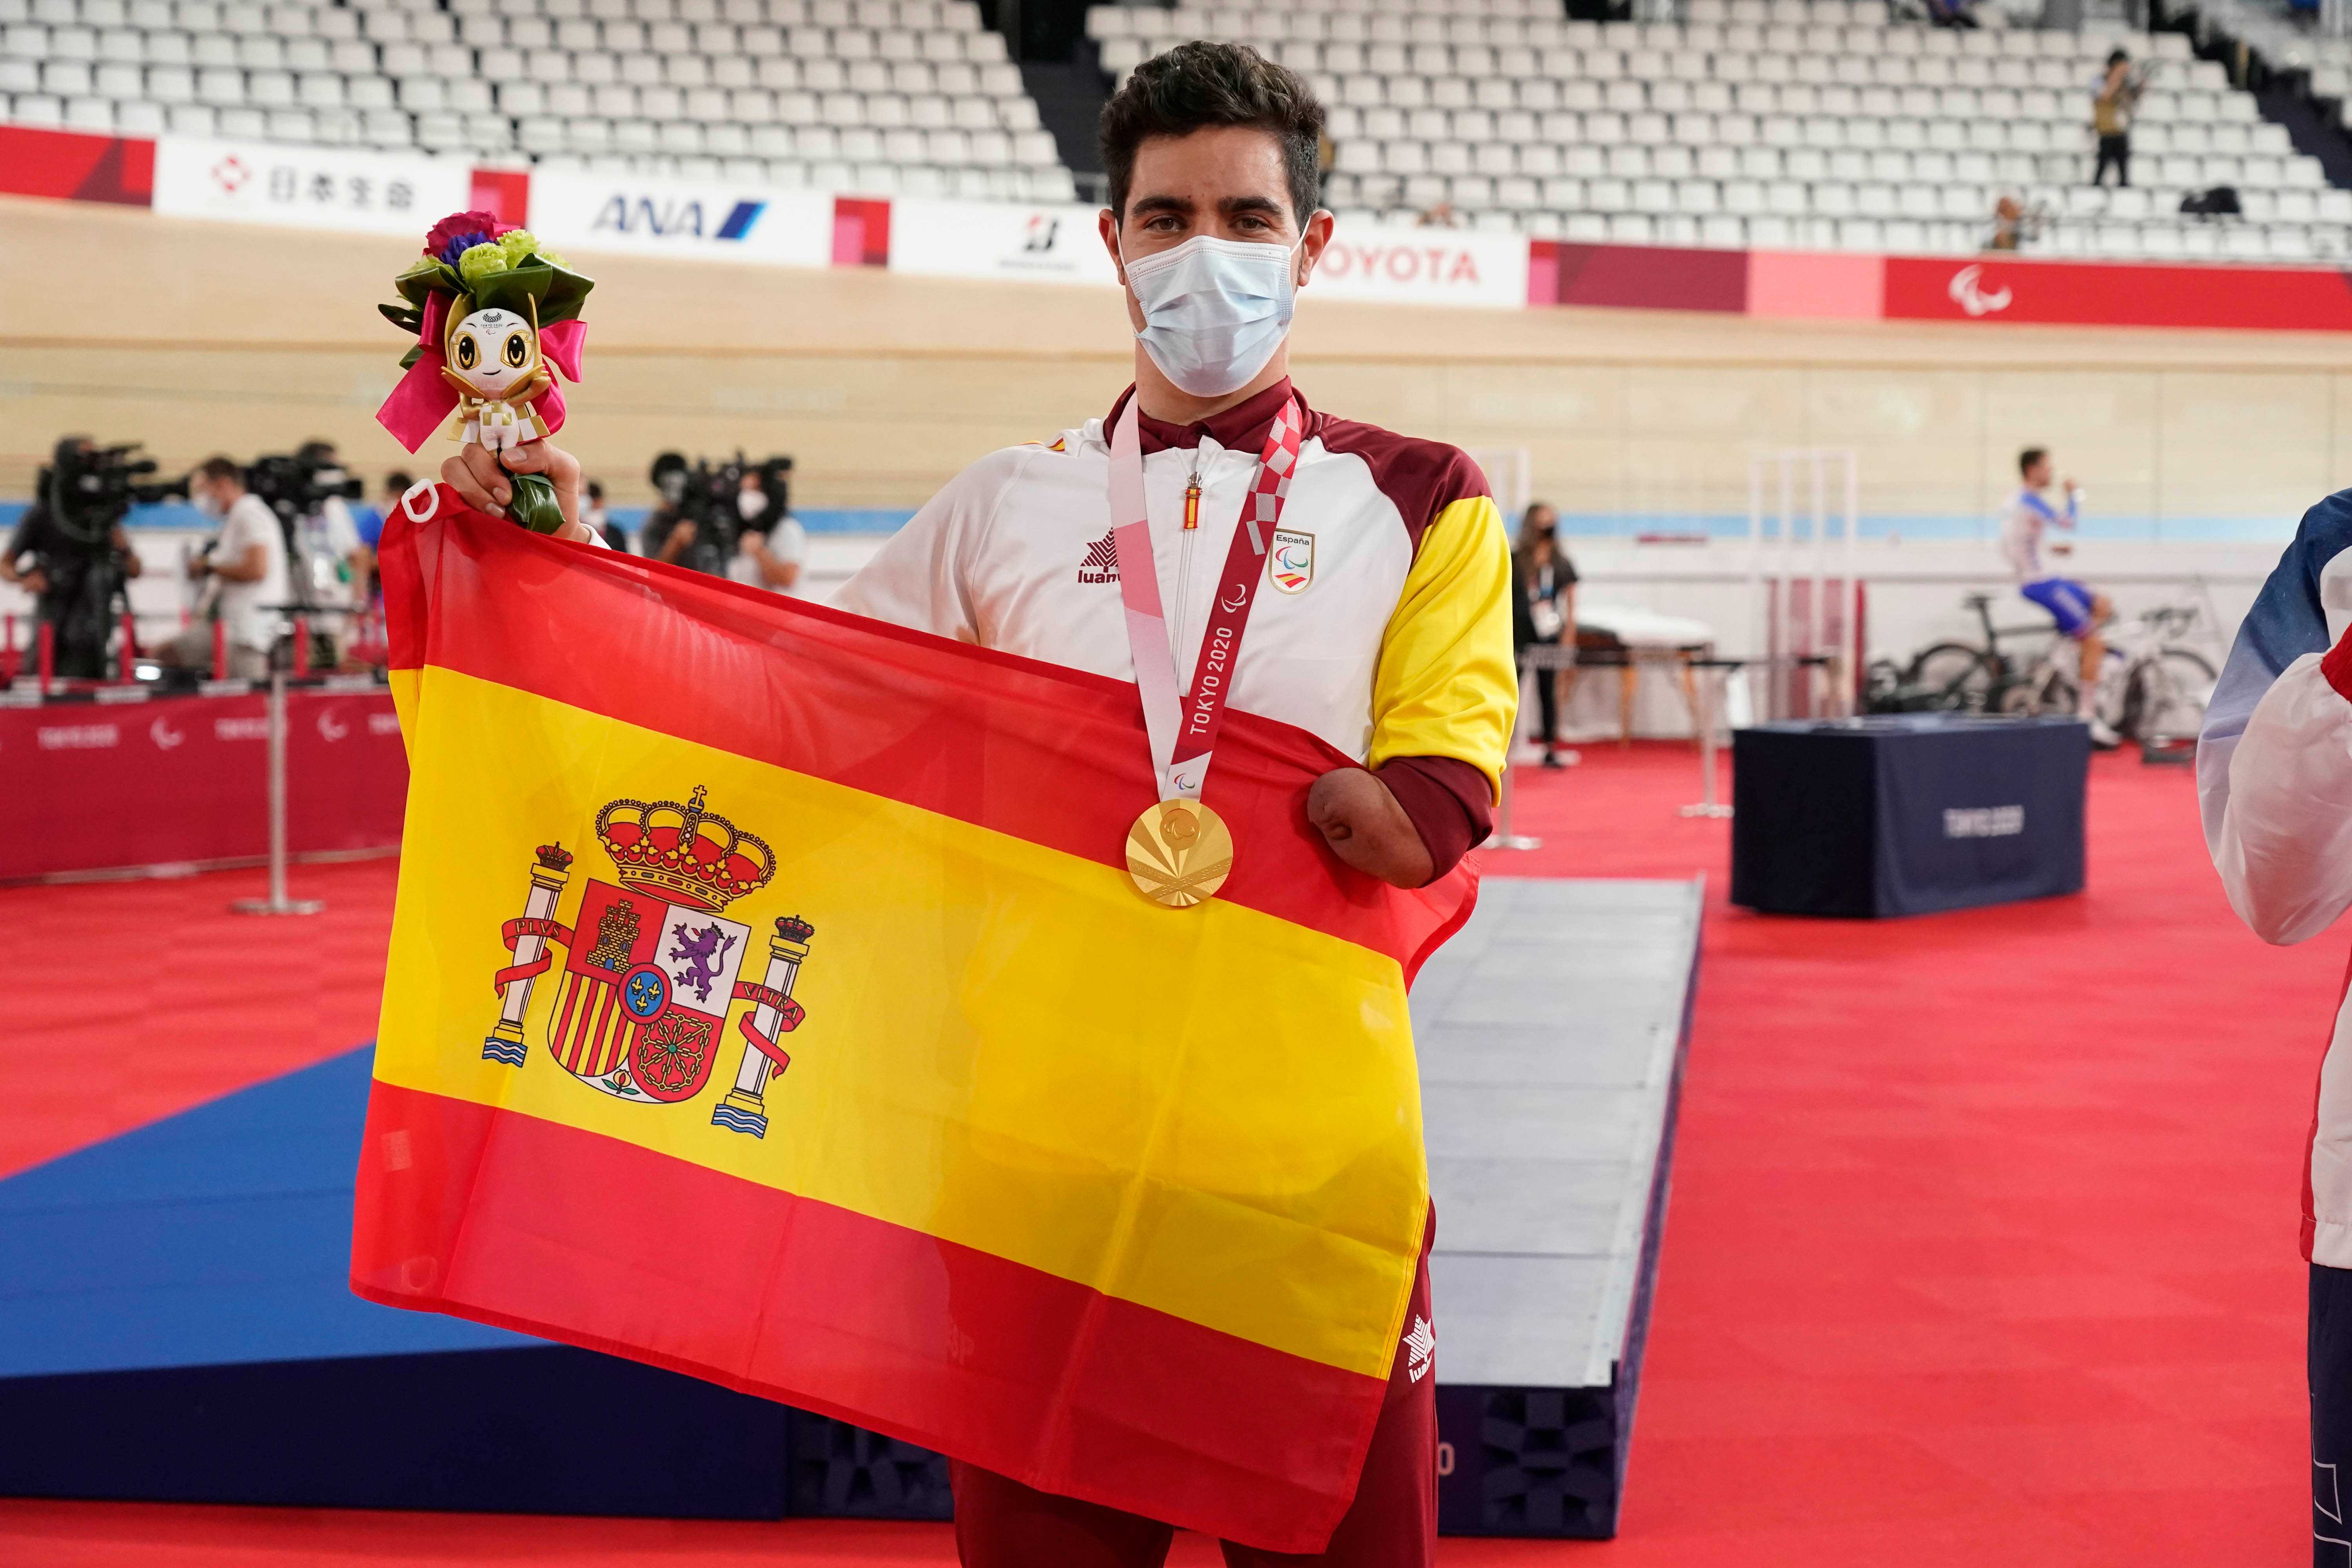 Alfonso Cabello da a España el primer oro en los Juegos Paralímpicos de Tokio